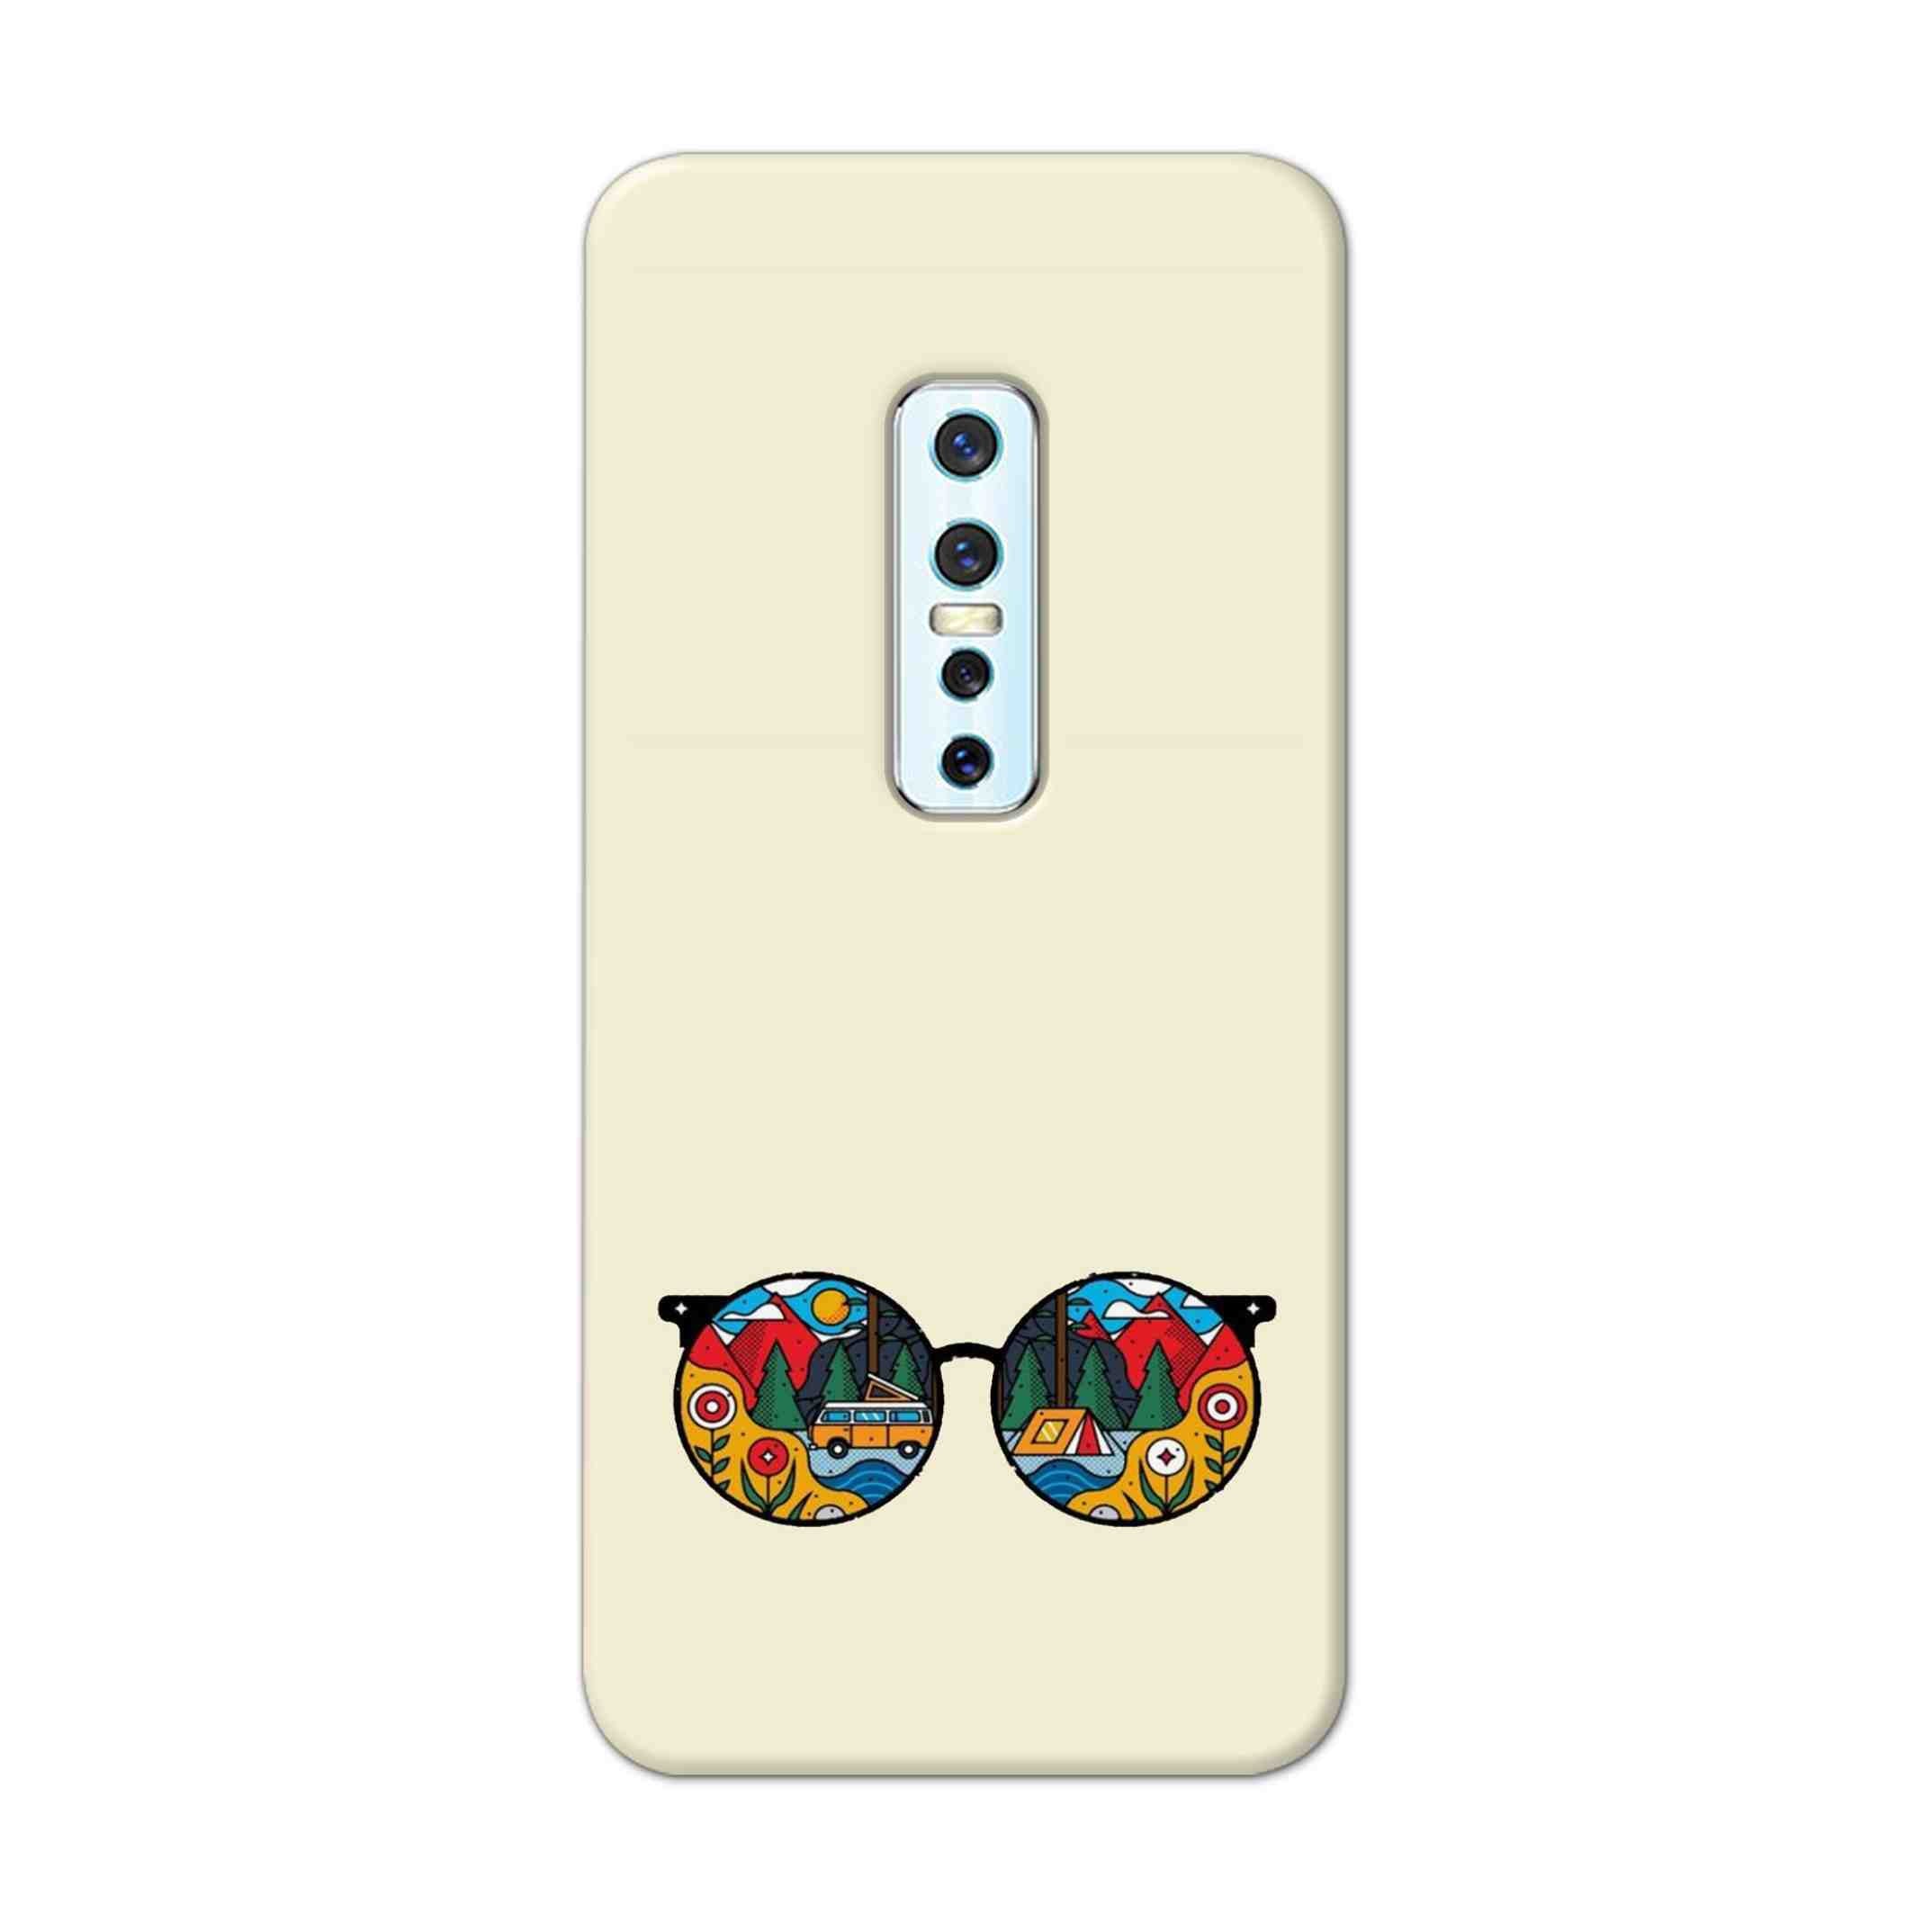 Buy Rainbow Sunglasses Hard Back Mobile Phone Case Cover For Vivo V17 Pro Online